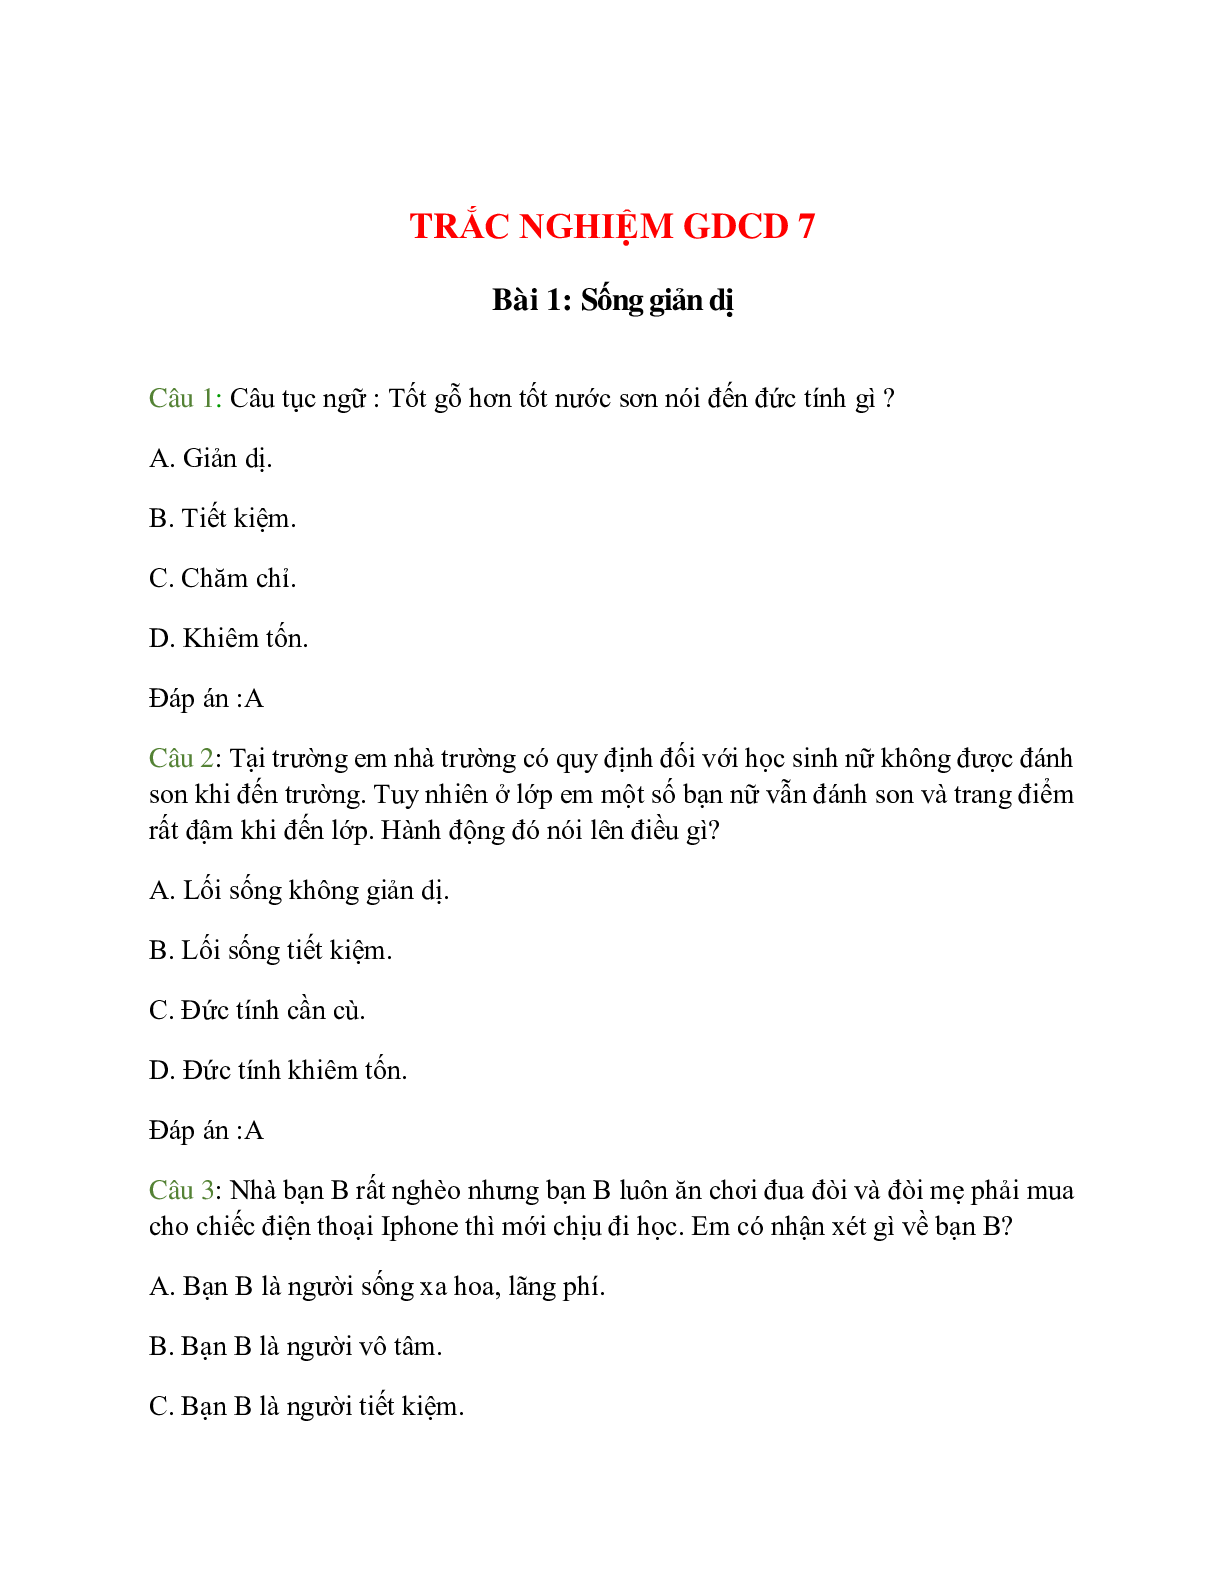 Trắc nghiệm GDCD 7 Bài 1 có đáp án: Sống giản dị (trang 1)